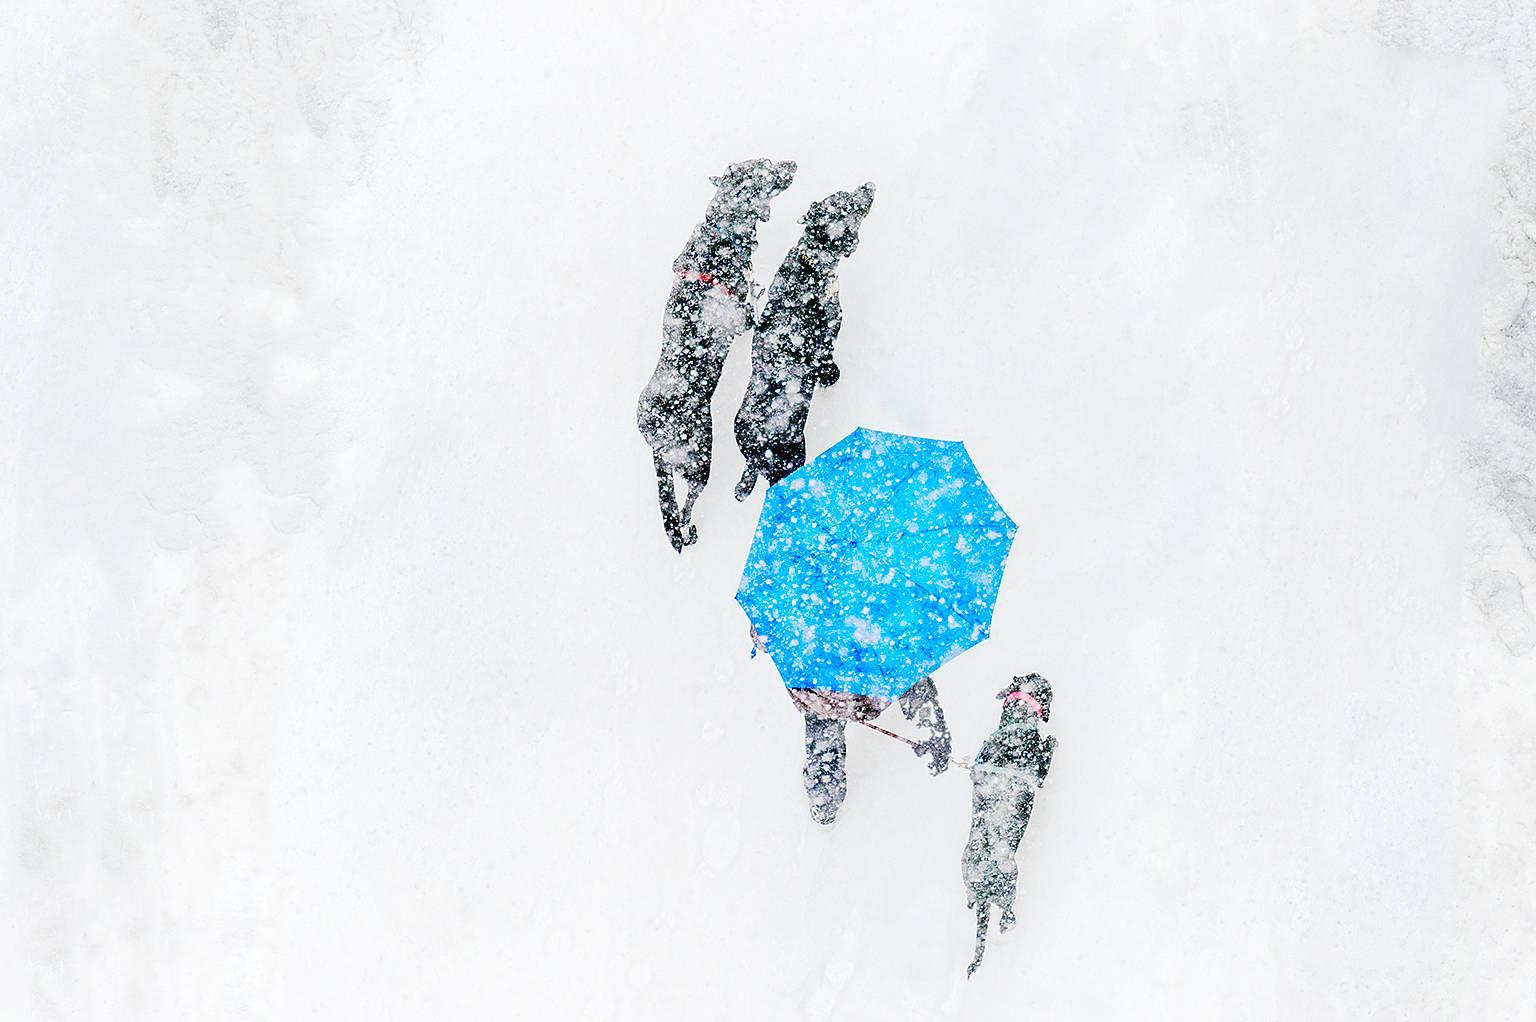 Les chiens dans la neige, couleurs monochromes, photographie abstraite de Michell  Funk